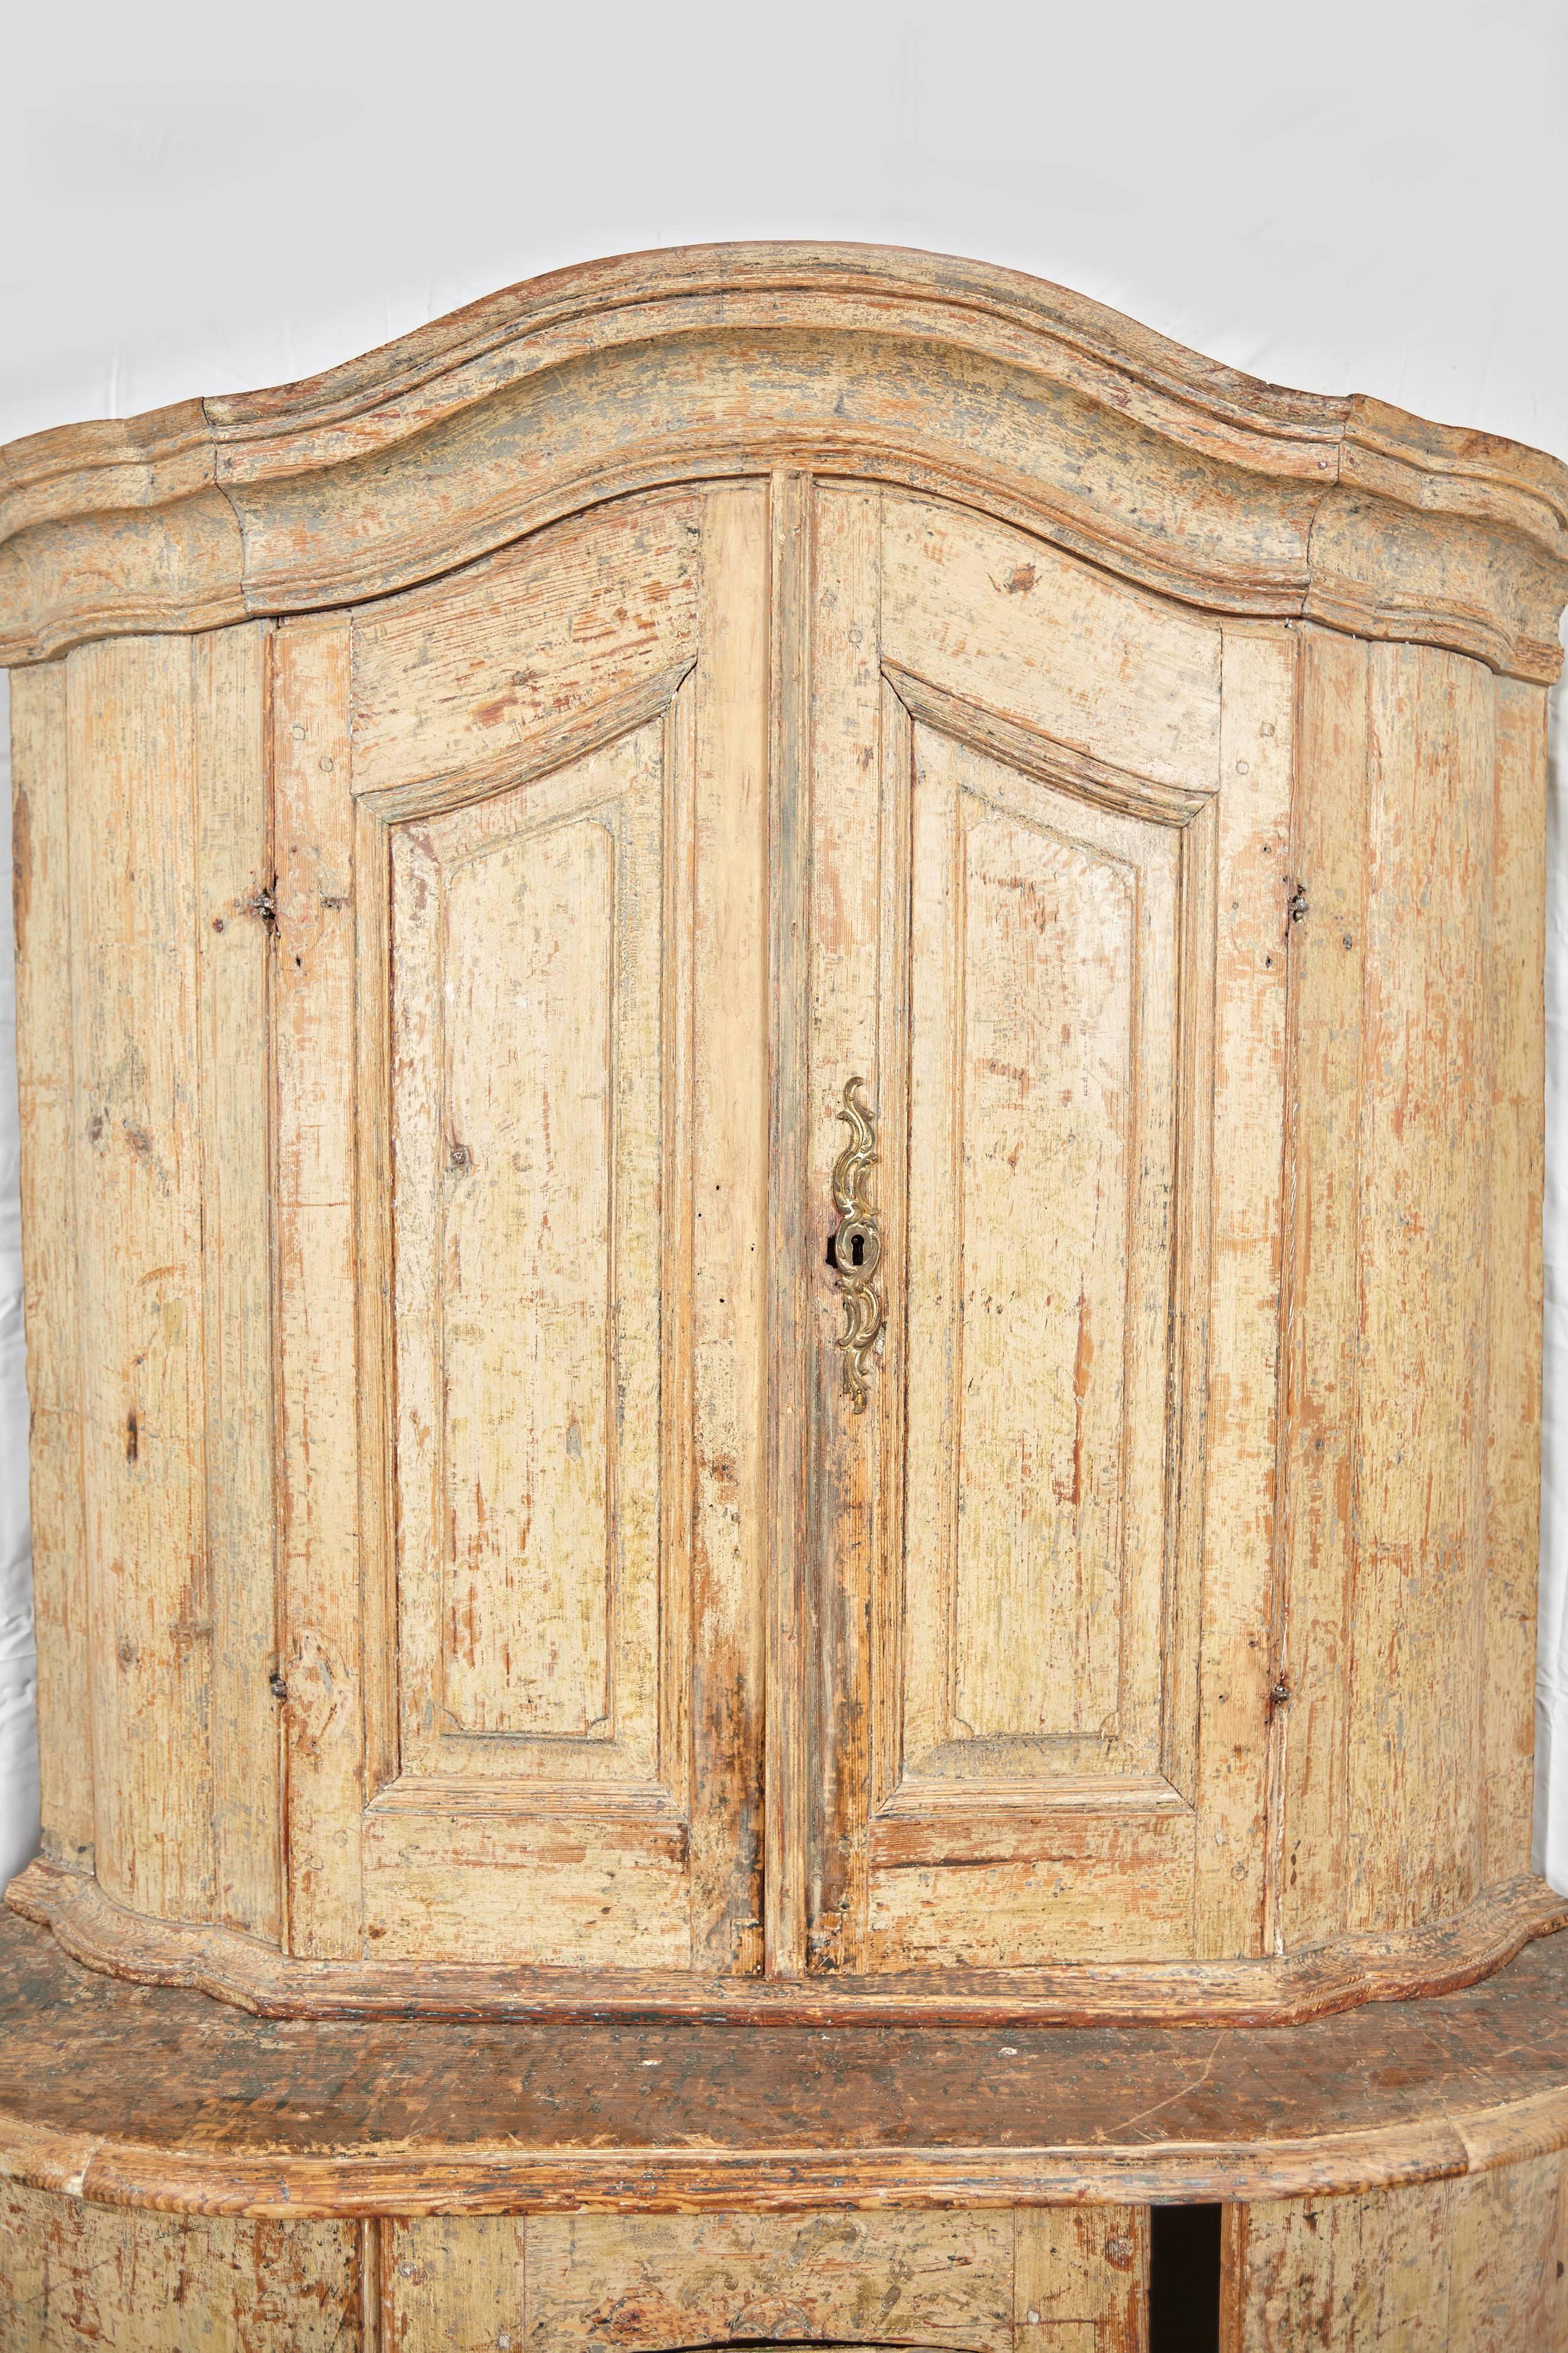 Wunderschöner zweiteiliger Gustavianischer Eckschrank, bestehend aus einem zurückgesetzten zweitürigen Schrank auf einem dreitürigen Sockel. Original abgenutzte cremefarbene Farbe auf der Außenseite mit einem schönen türkis lackierten Innenraum.